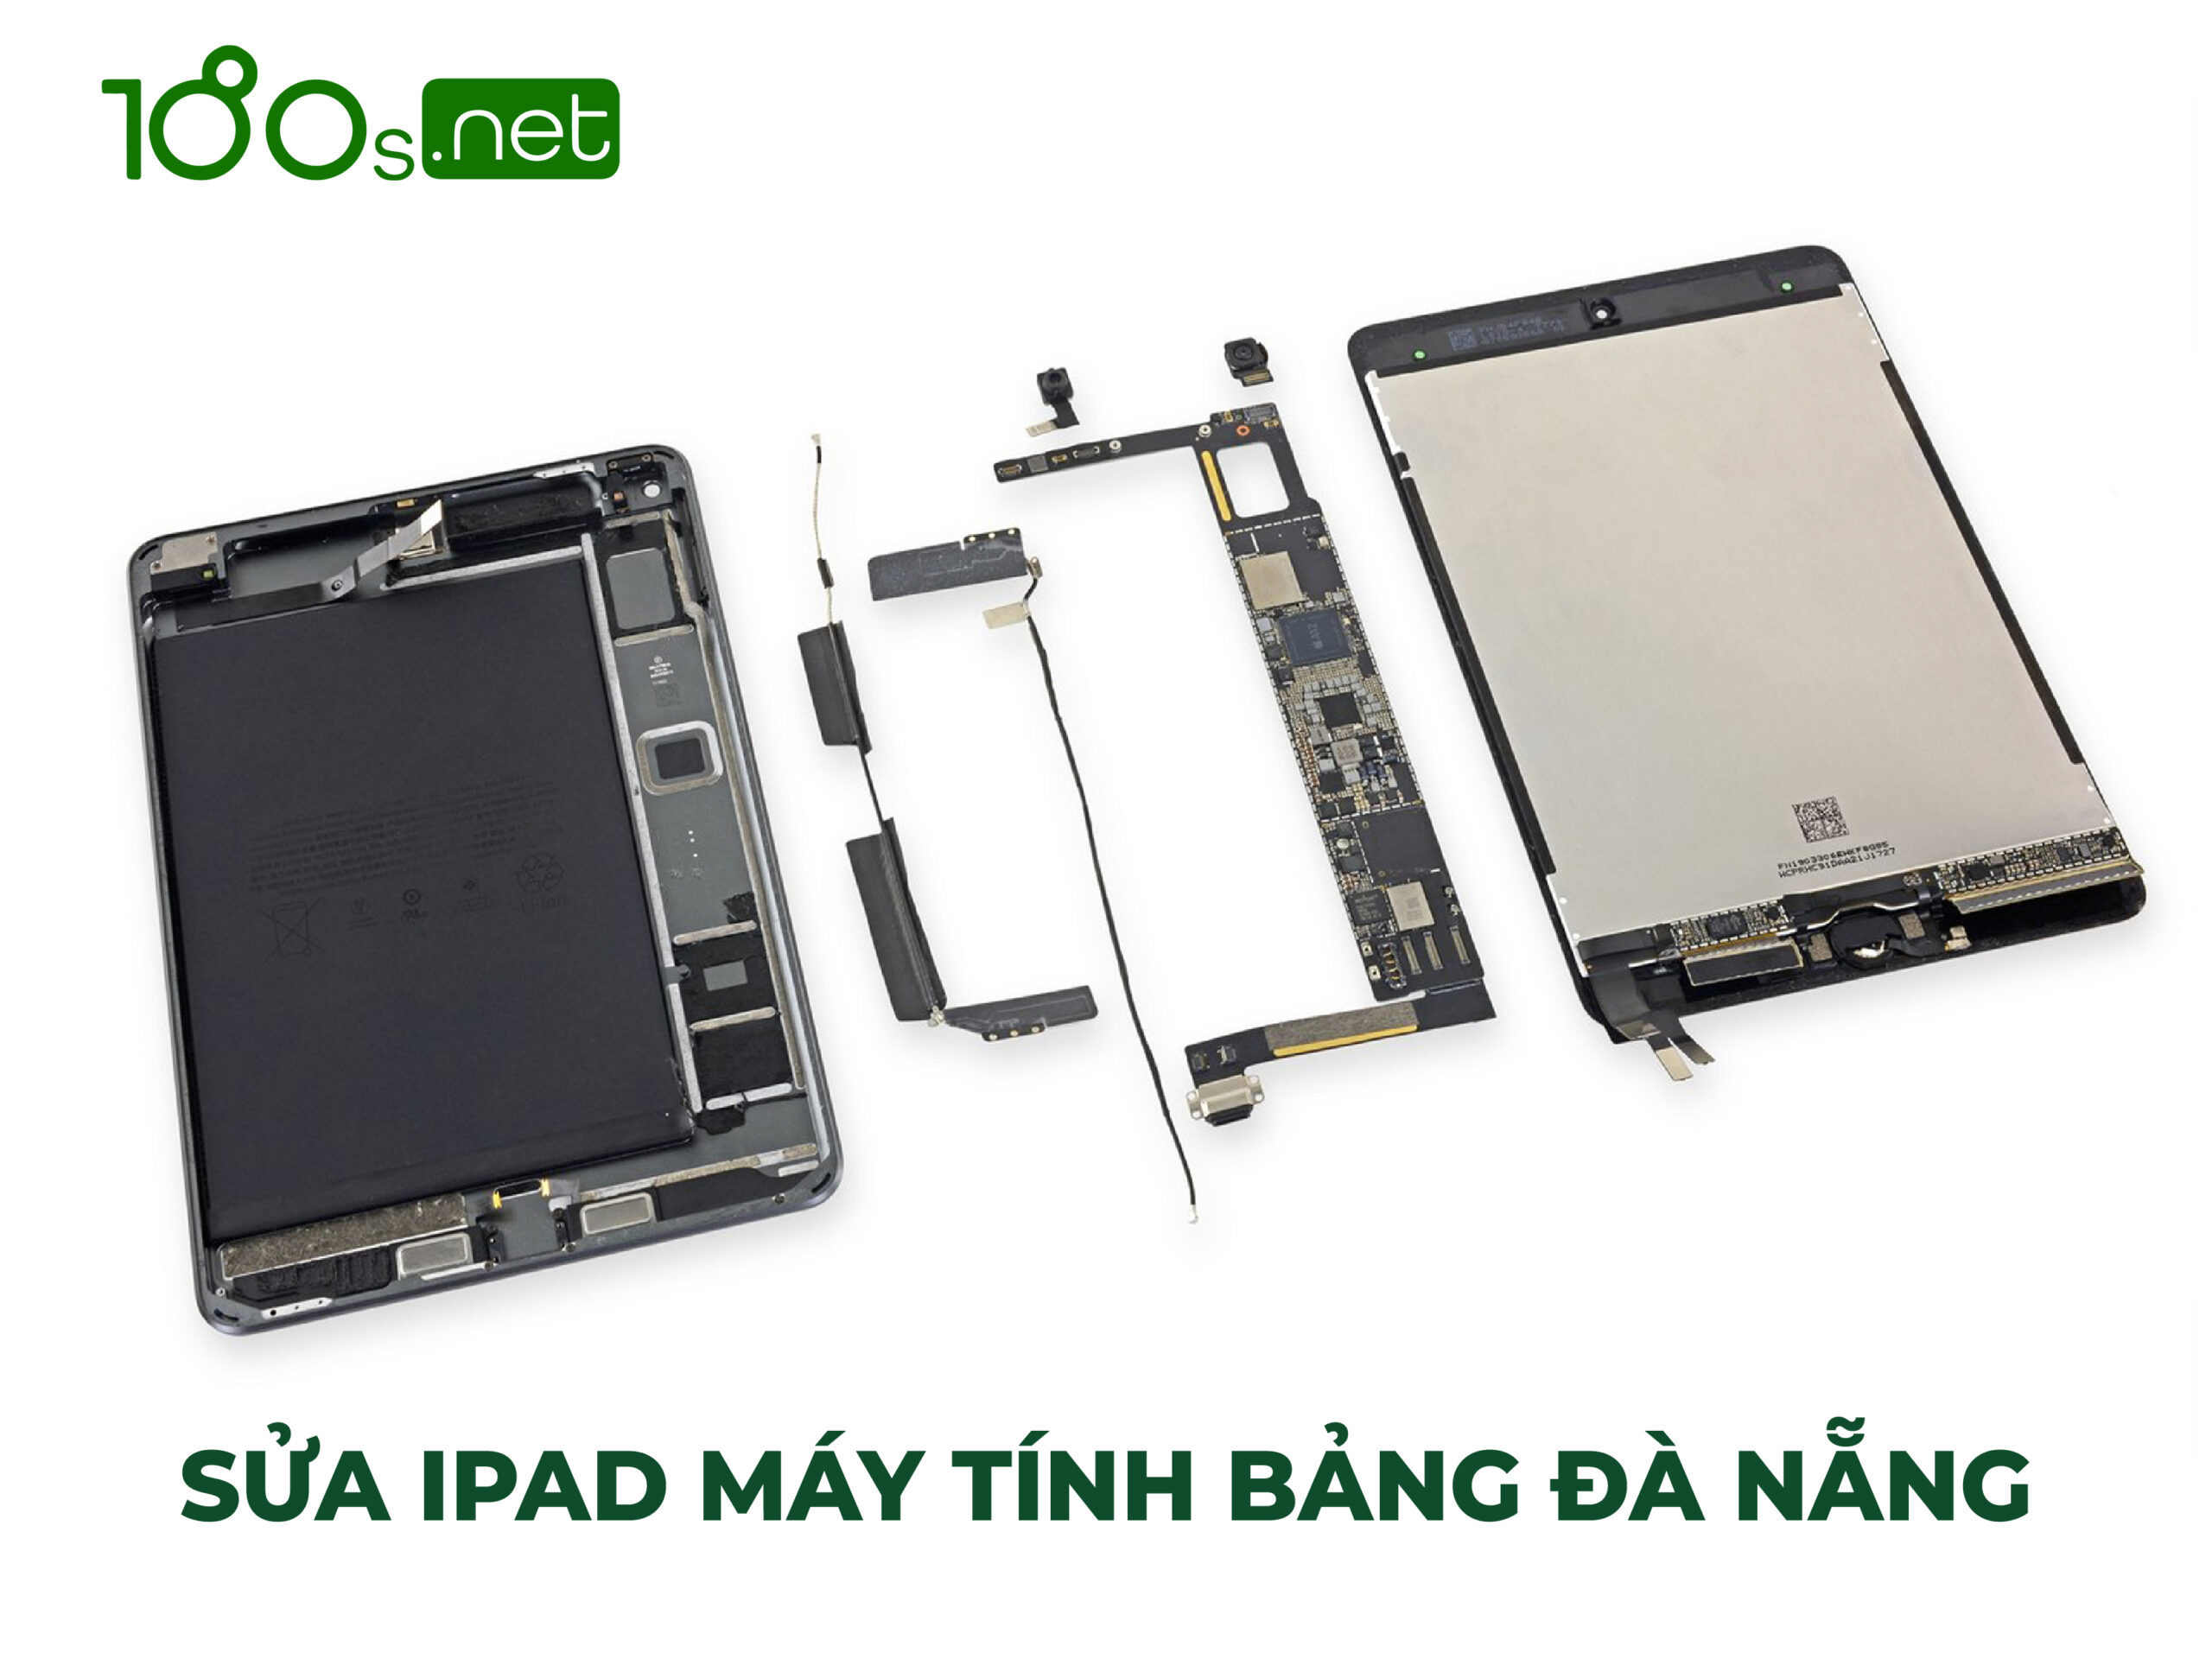 Sửa iPad máy tính bảng Đà Nẵng